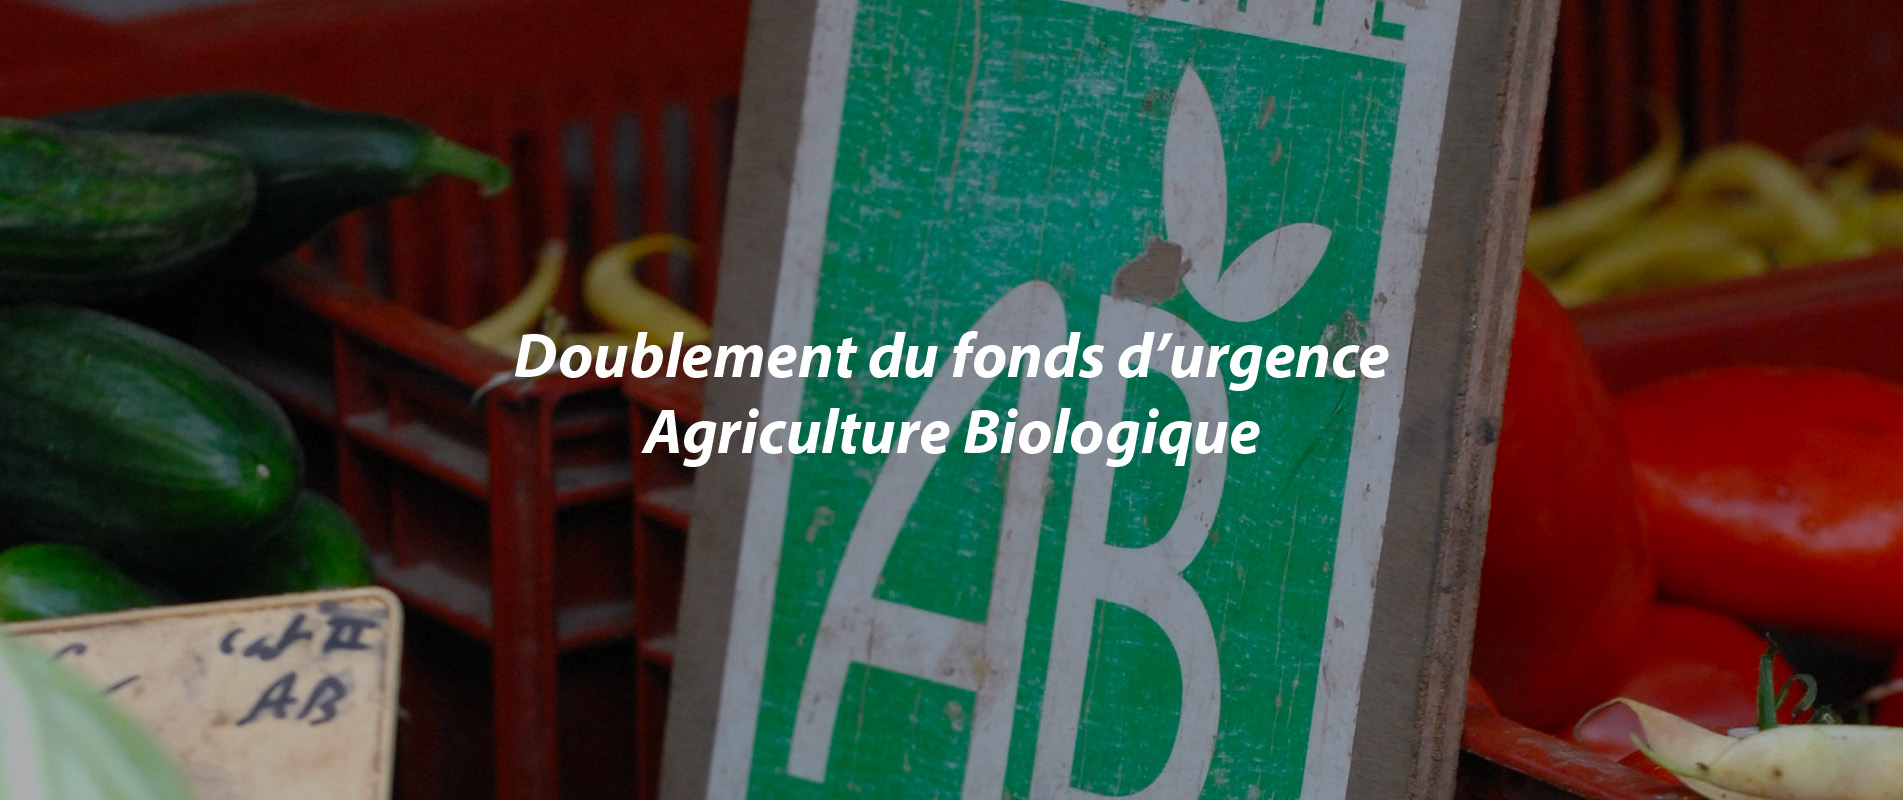 DOUBLEMENT DU FONDS D’URGENCE AGRICULTURE BIOLOGIQUE